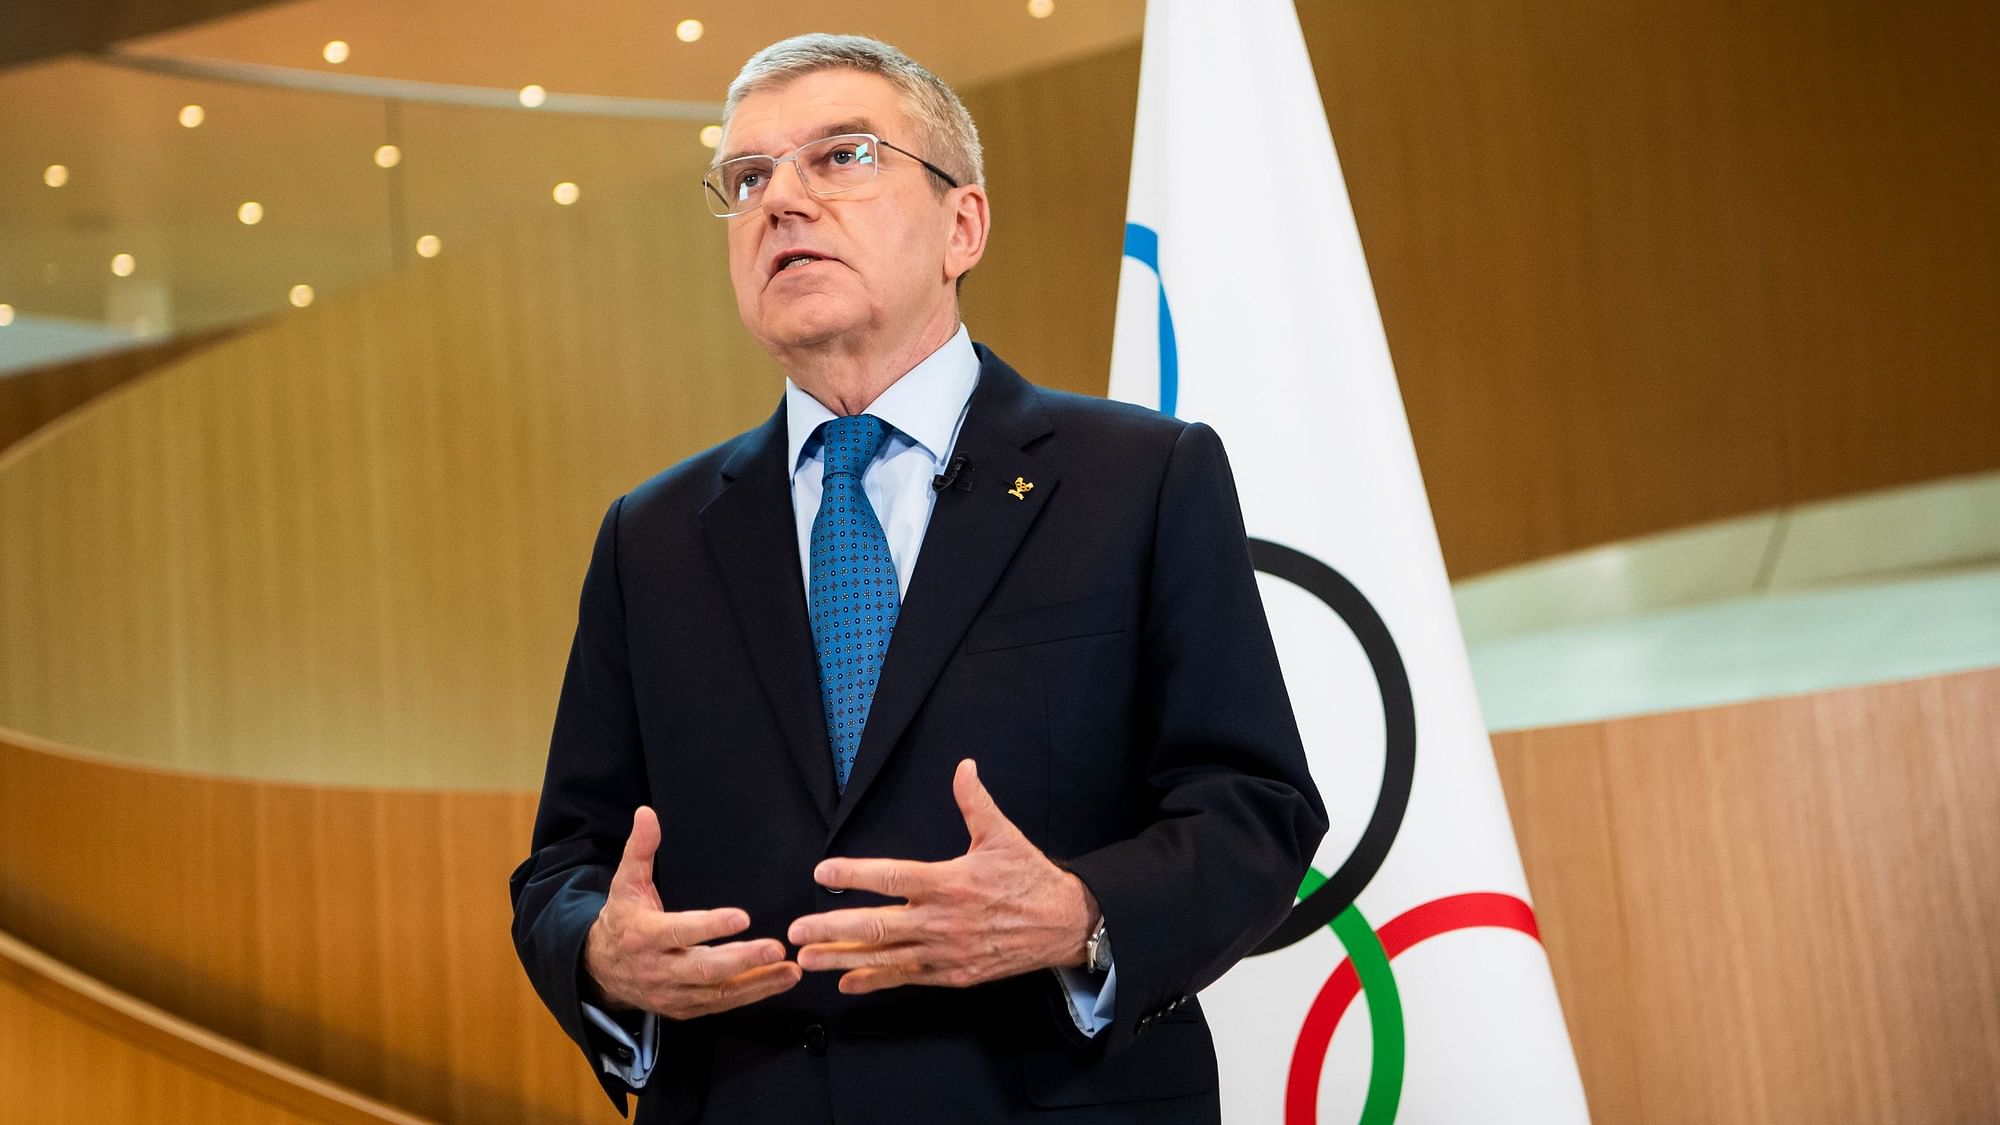 <div class="paragraphs"><p> IOC President Thomas Bach </p></div>